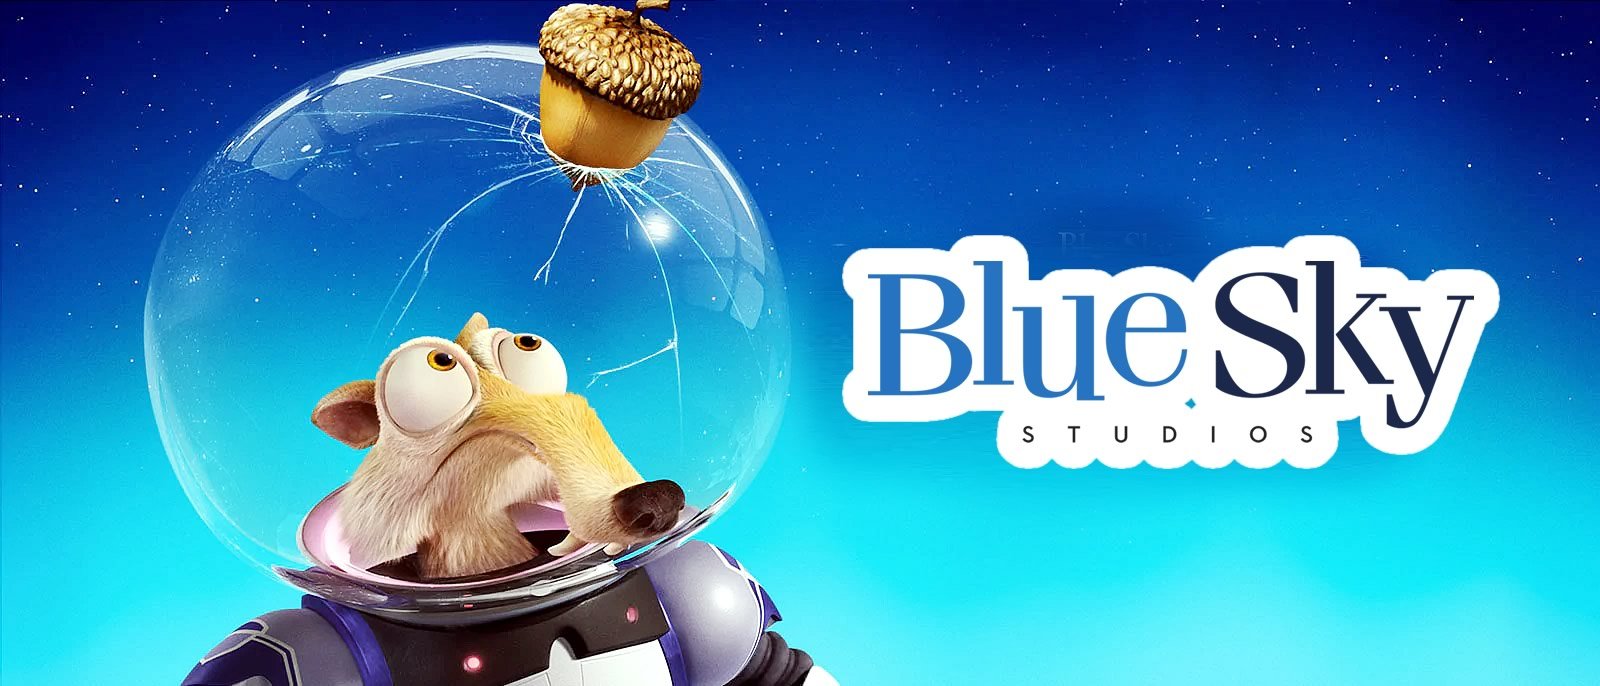 Disney fecha os estúdios Blue Sky da Fox Animation House